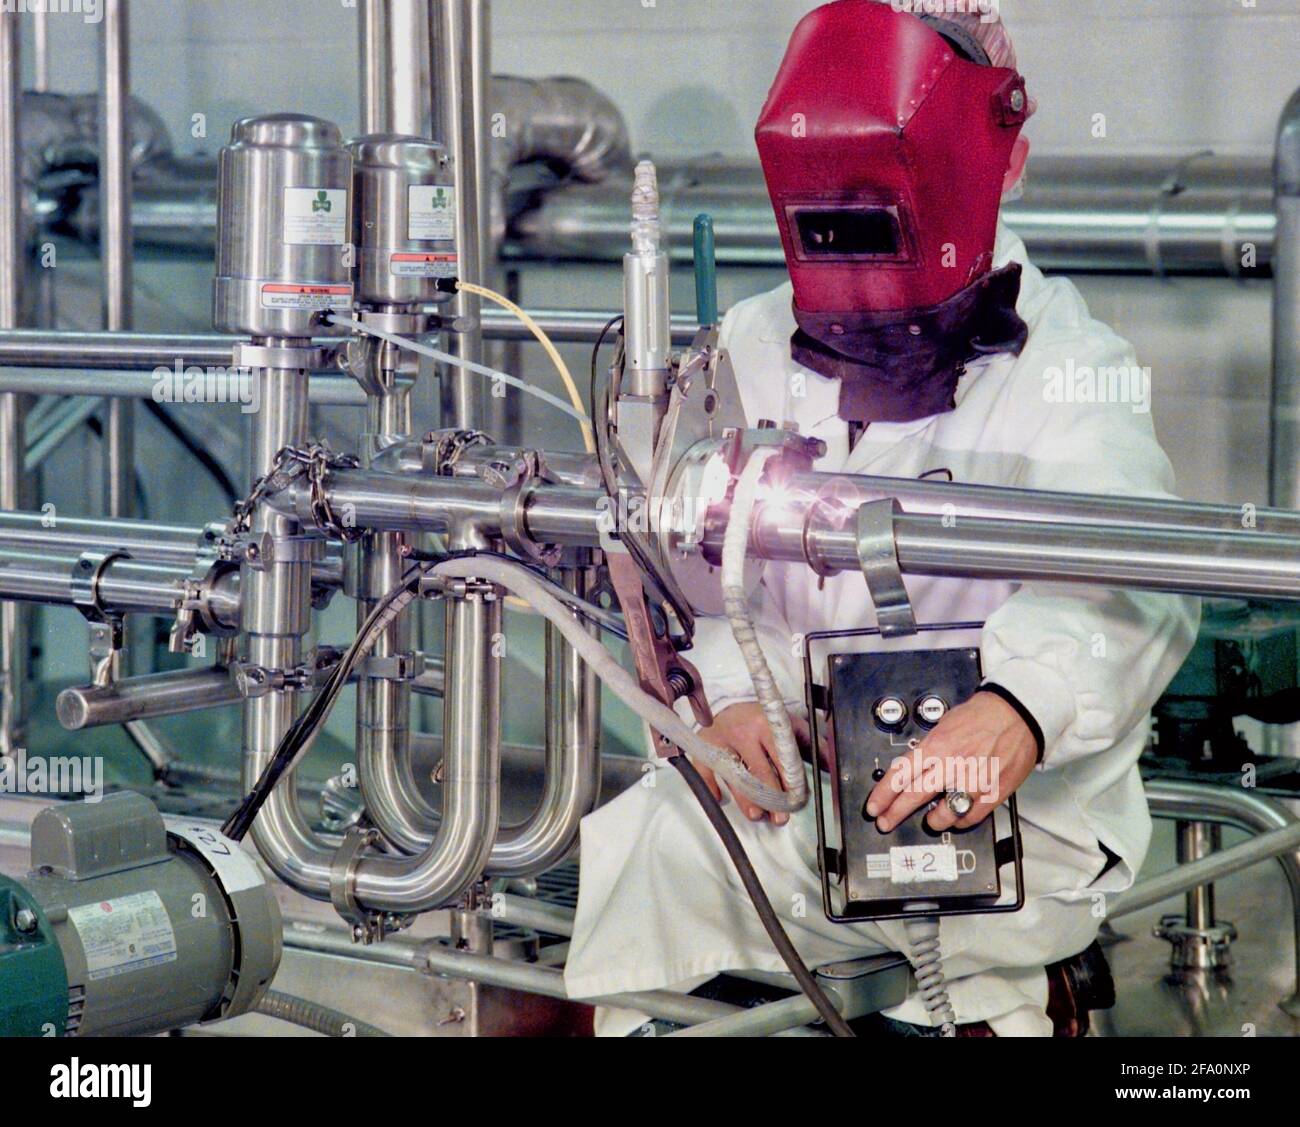 Ein Schweißer verwendet einen Orbitalschweißroboter, um Edelstahlrohre in einer lebensmittelverarbeitende Einrichtung miteinander zu schweißen. Stockfoto